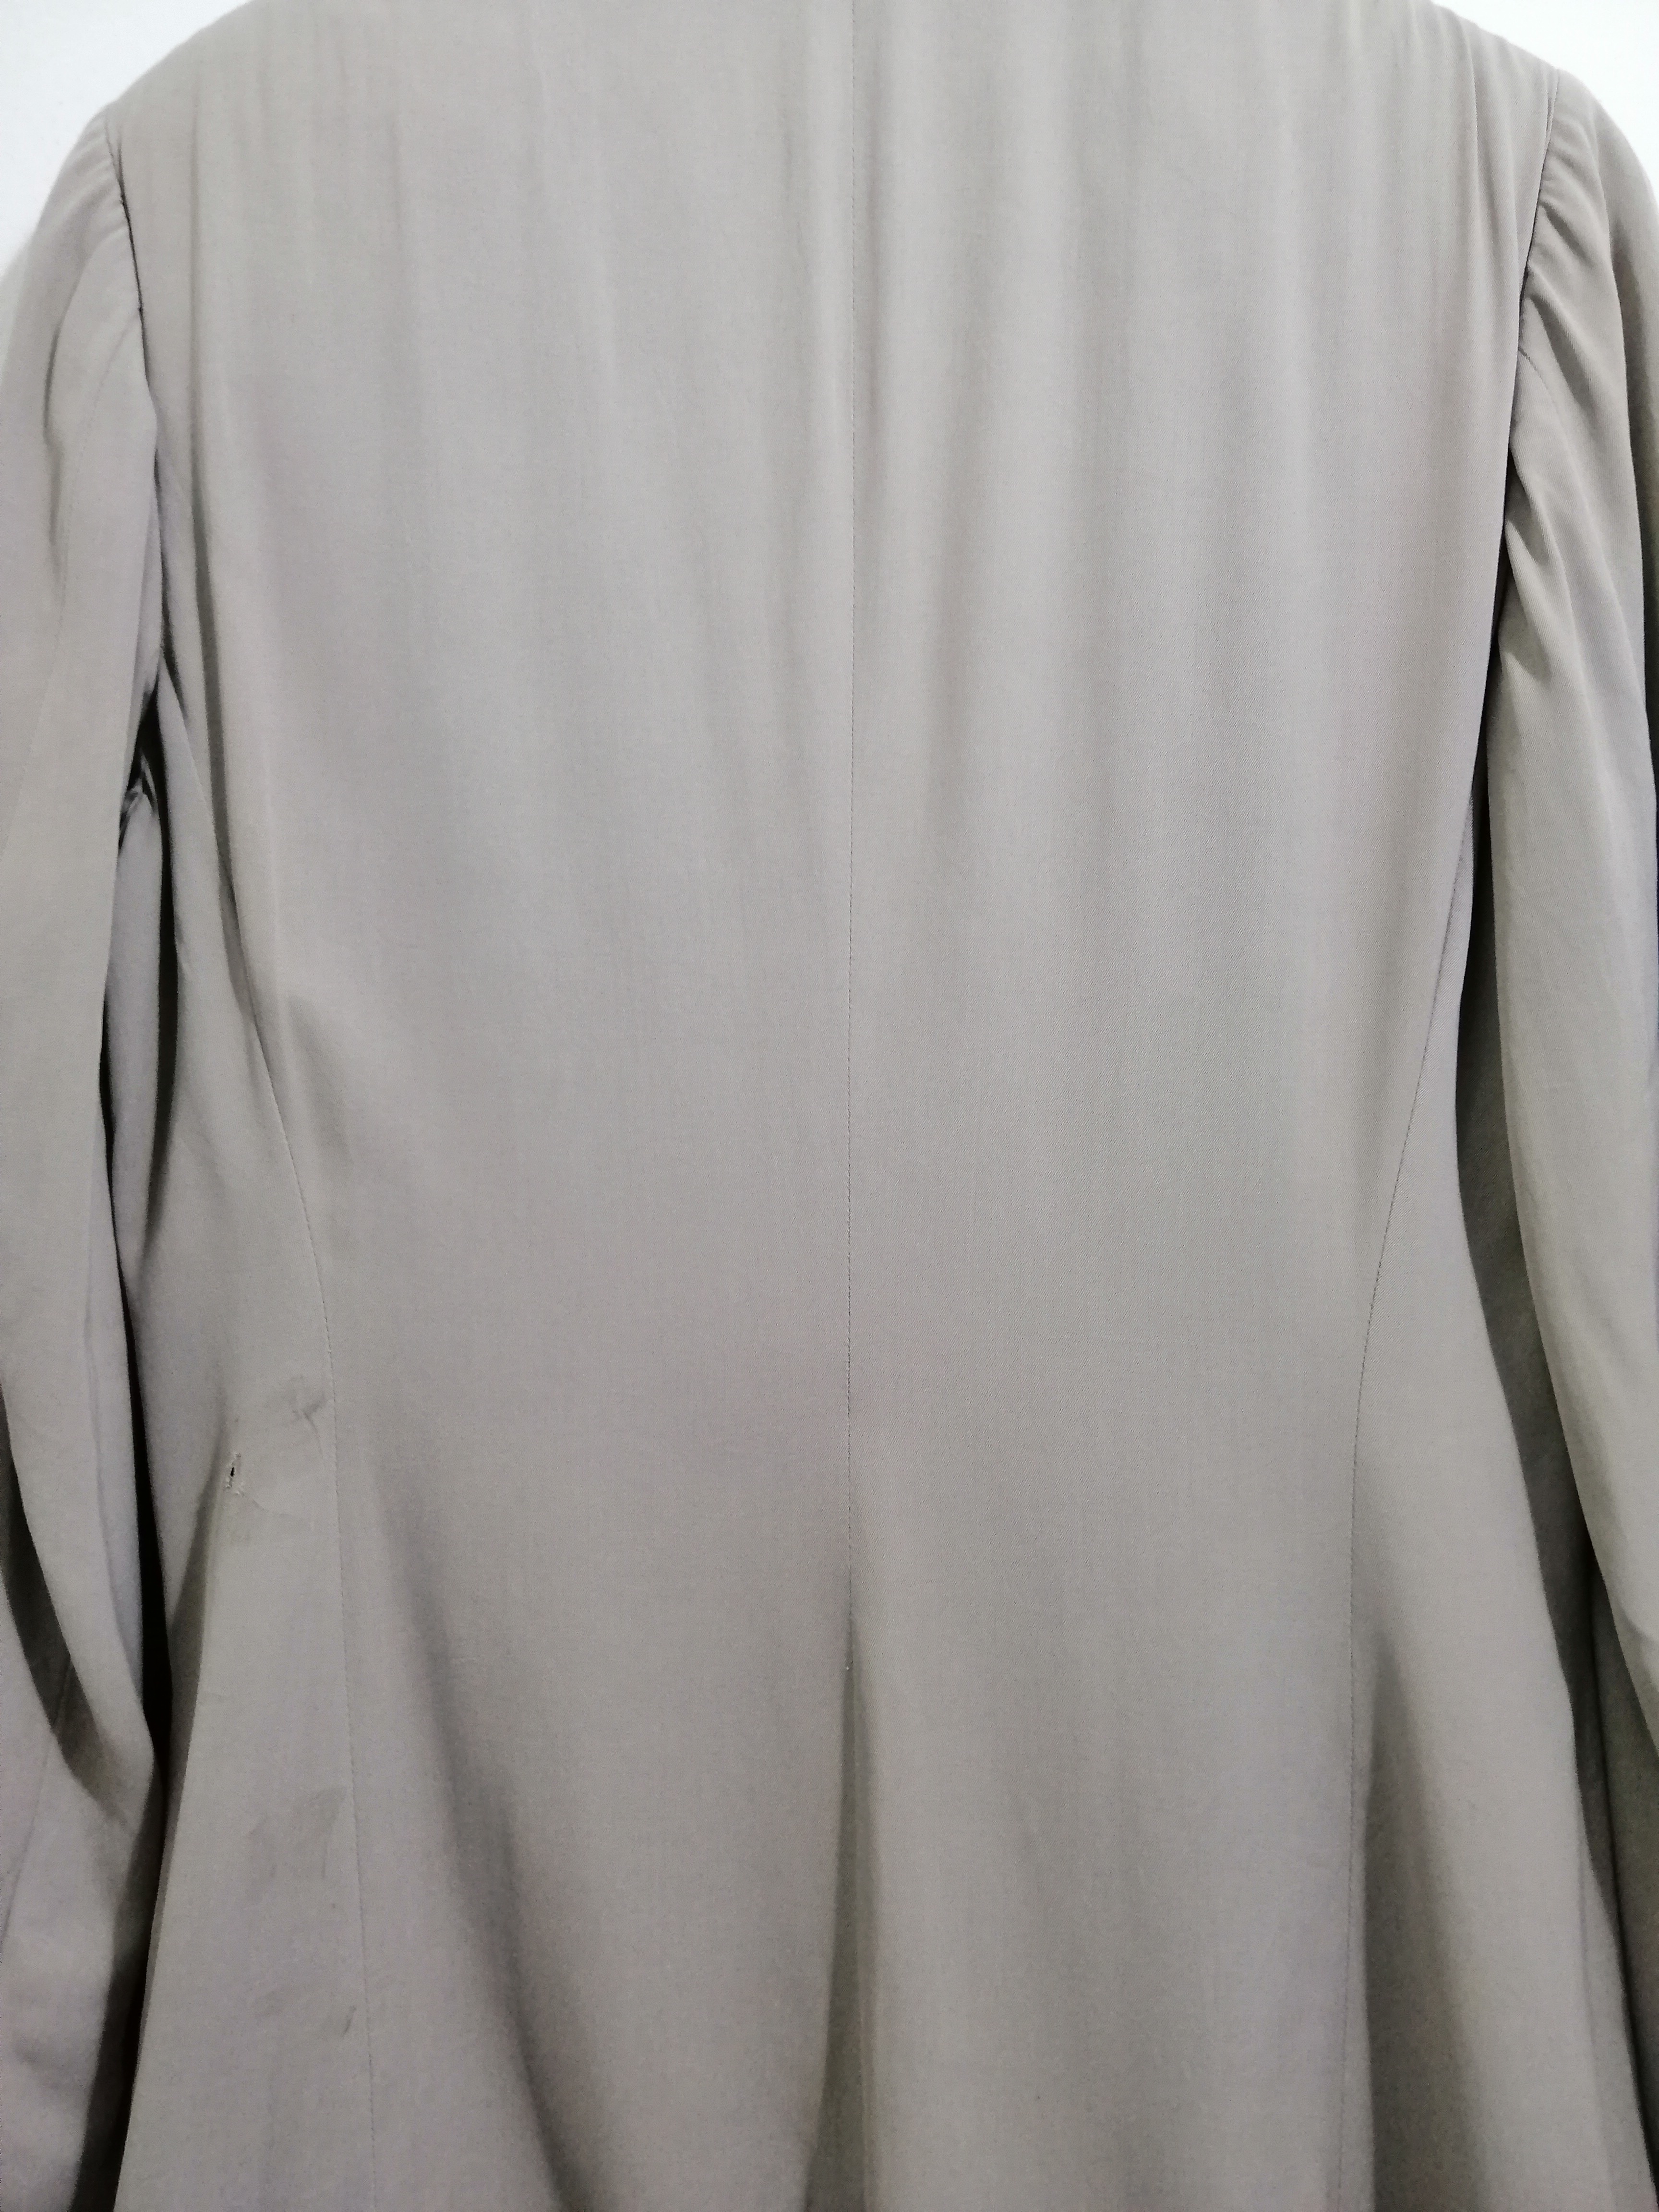 Jil Sander Jacket Coat Gray Color 10 - 5